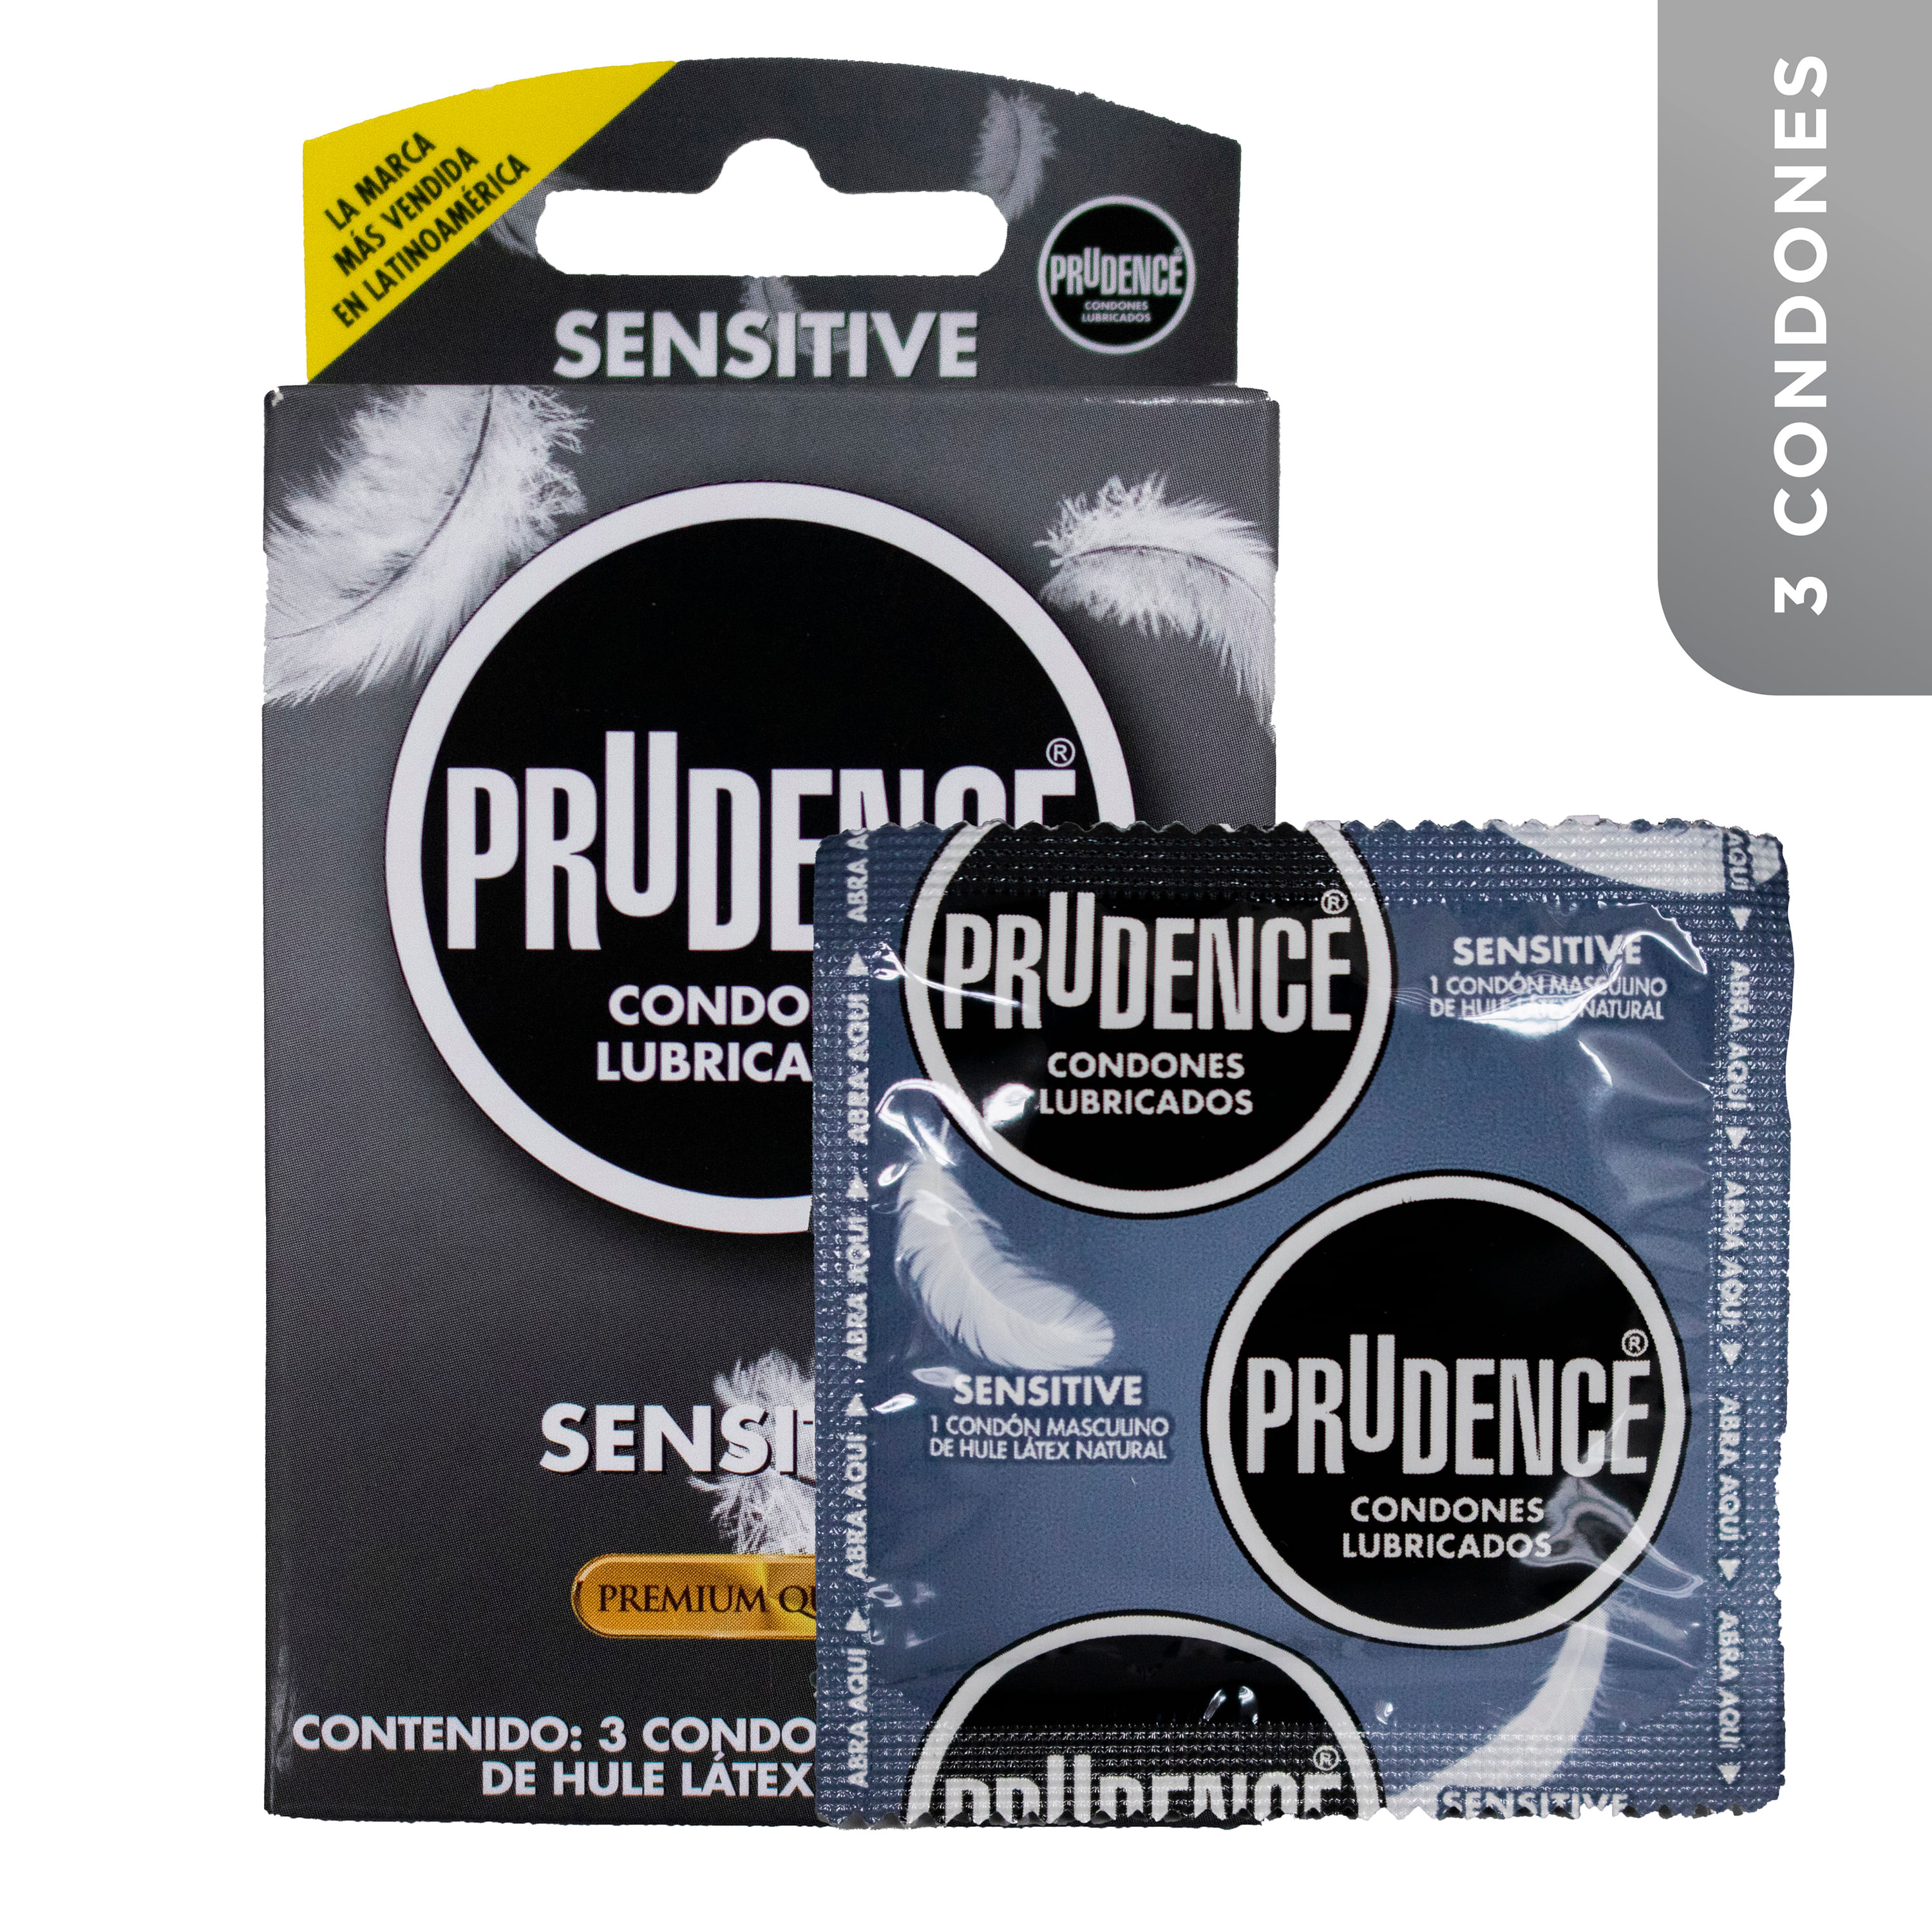 Preservativos-Prudence-Sensitivo-Caja-3-unidades-1-63330